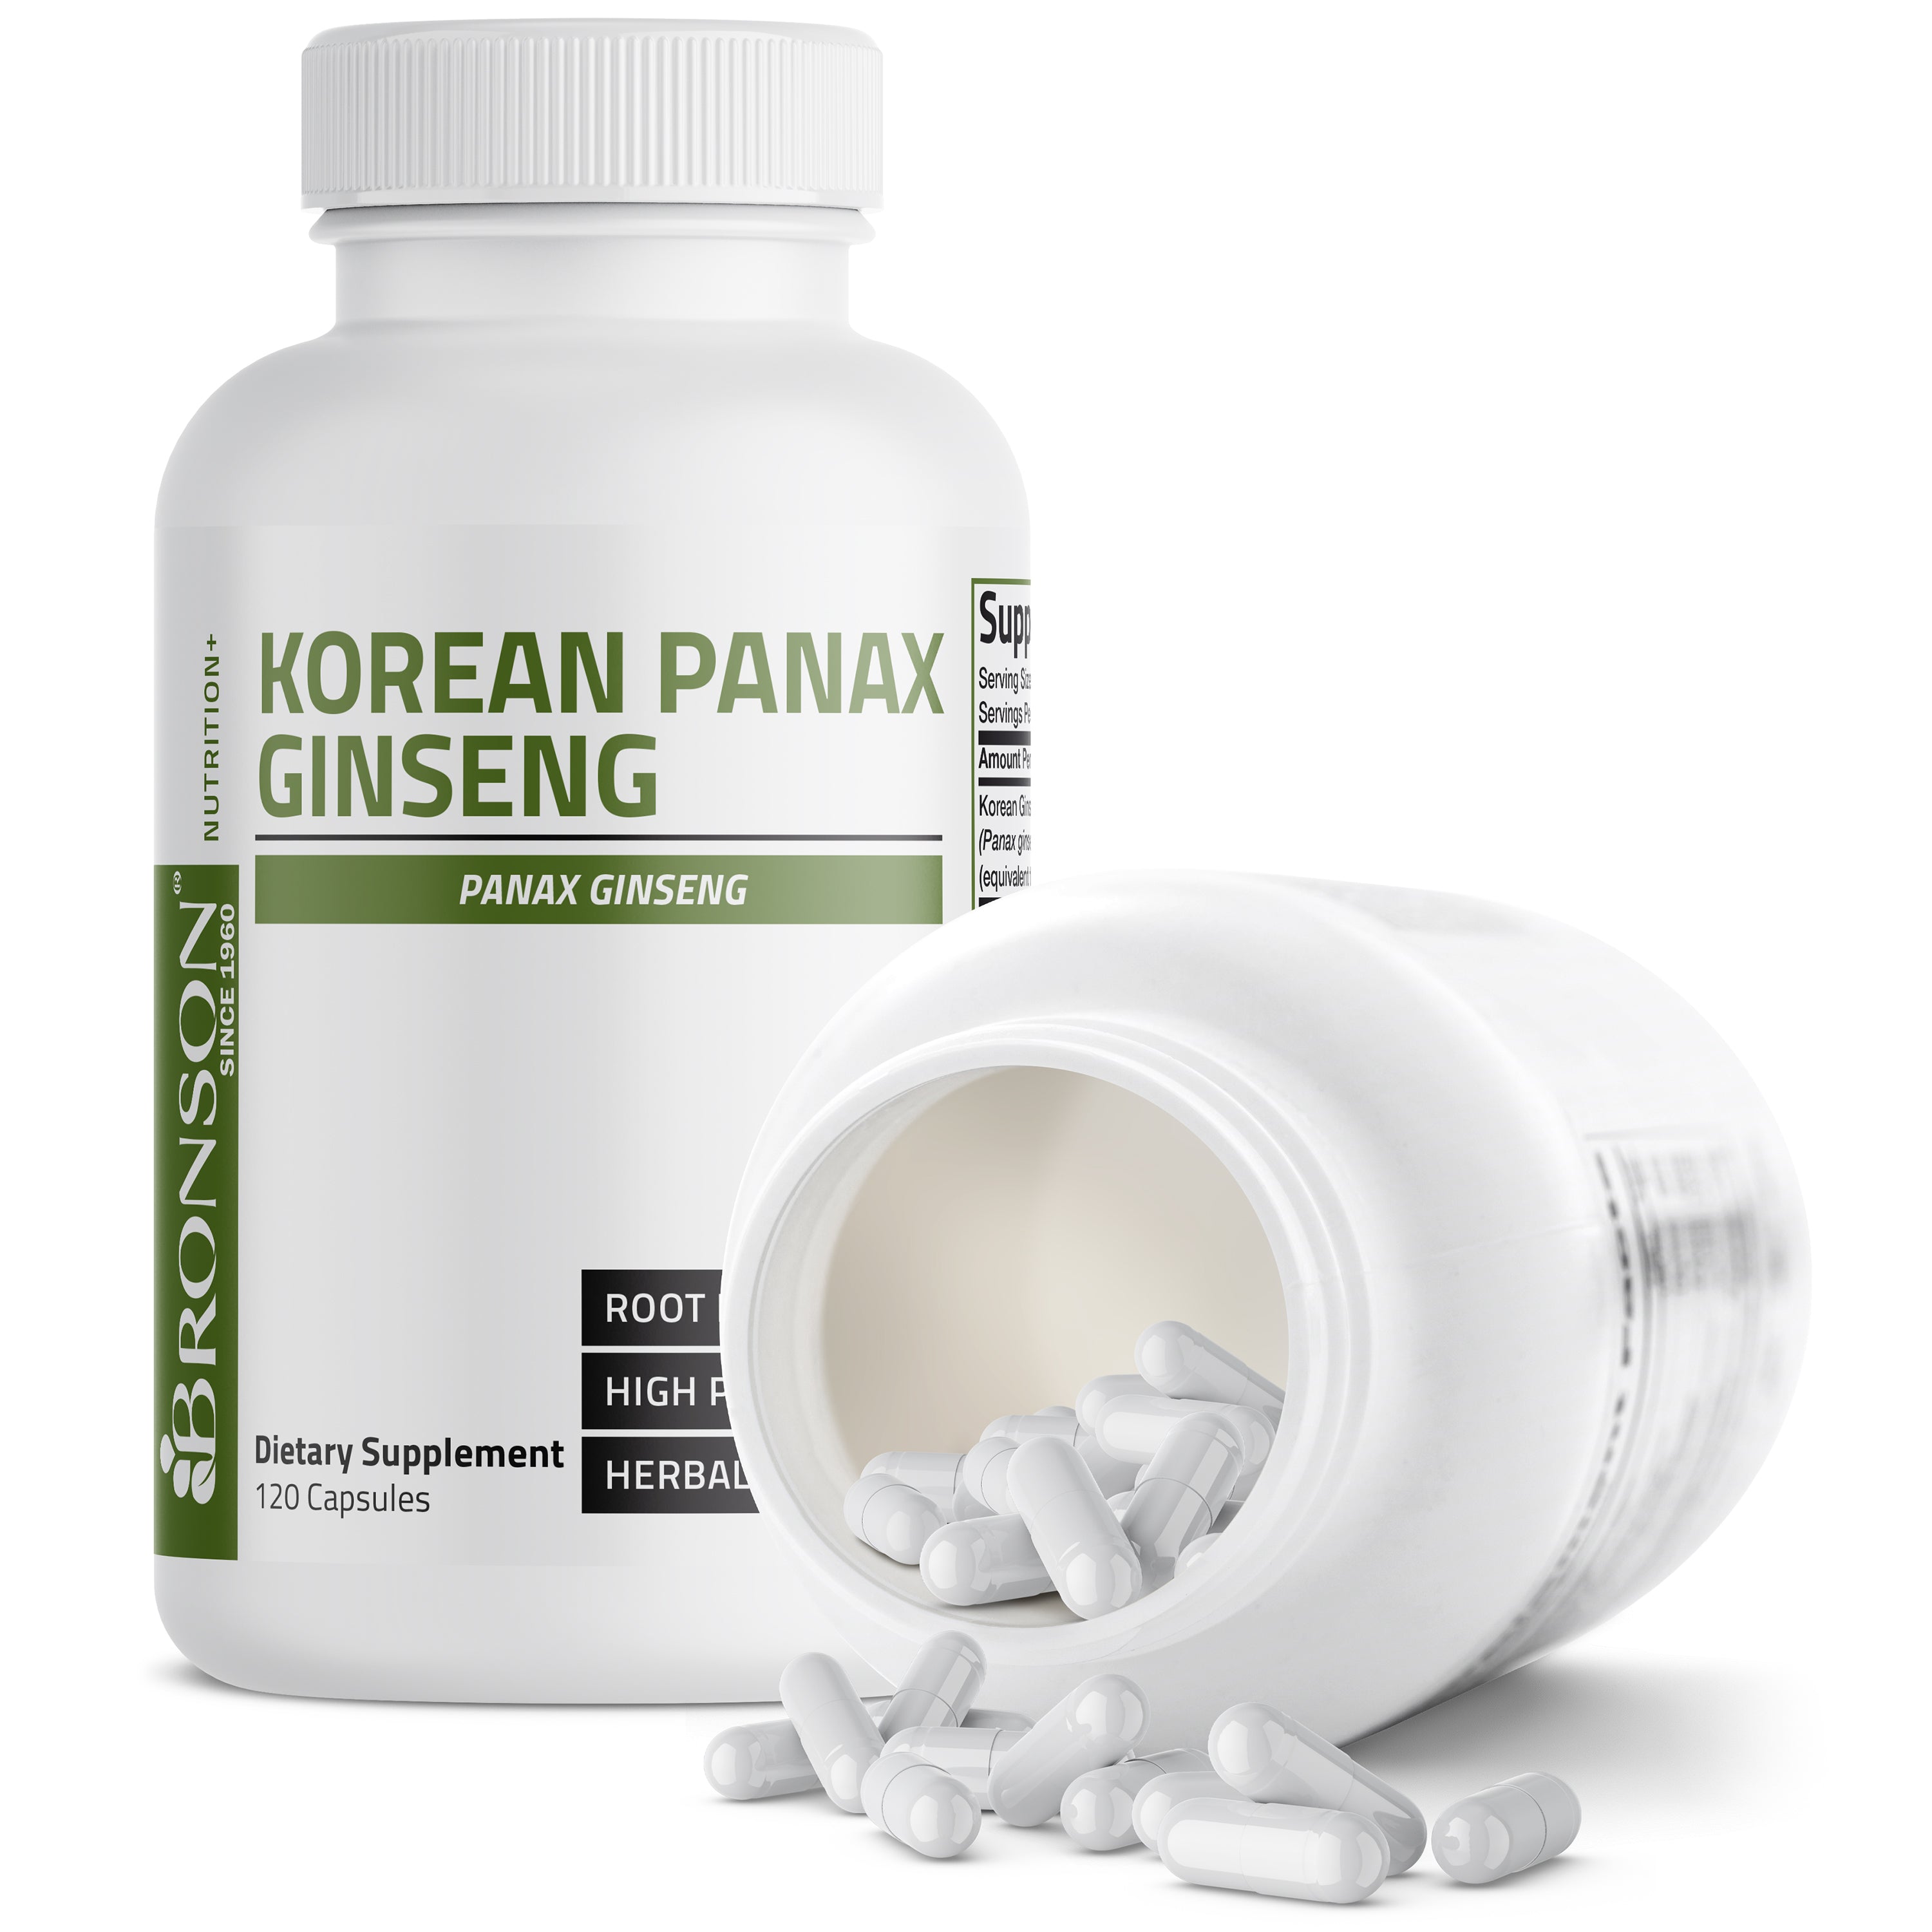 Korean Panax Ginseng - 1,000 mg view 9 of 6